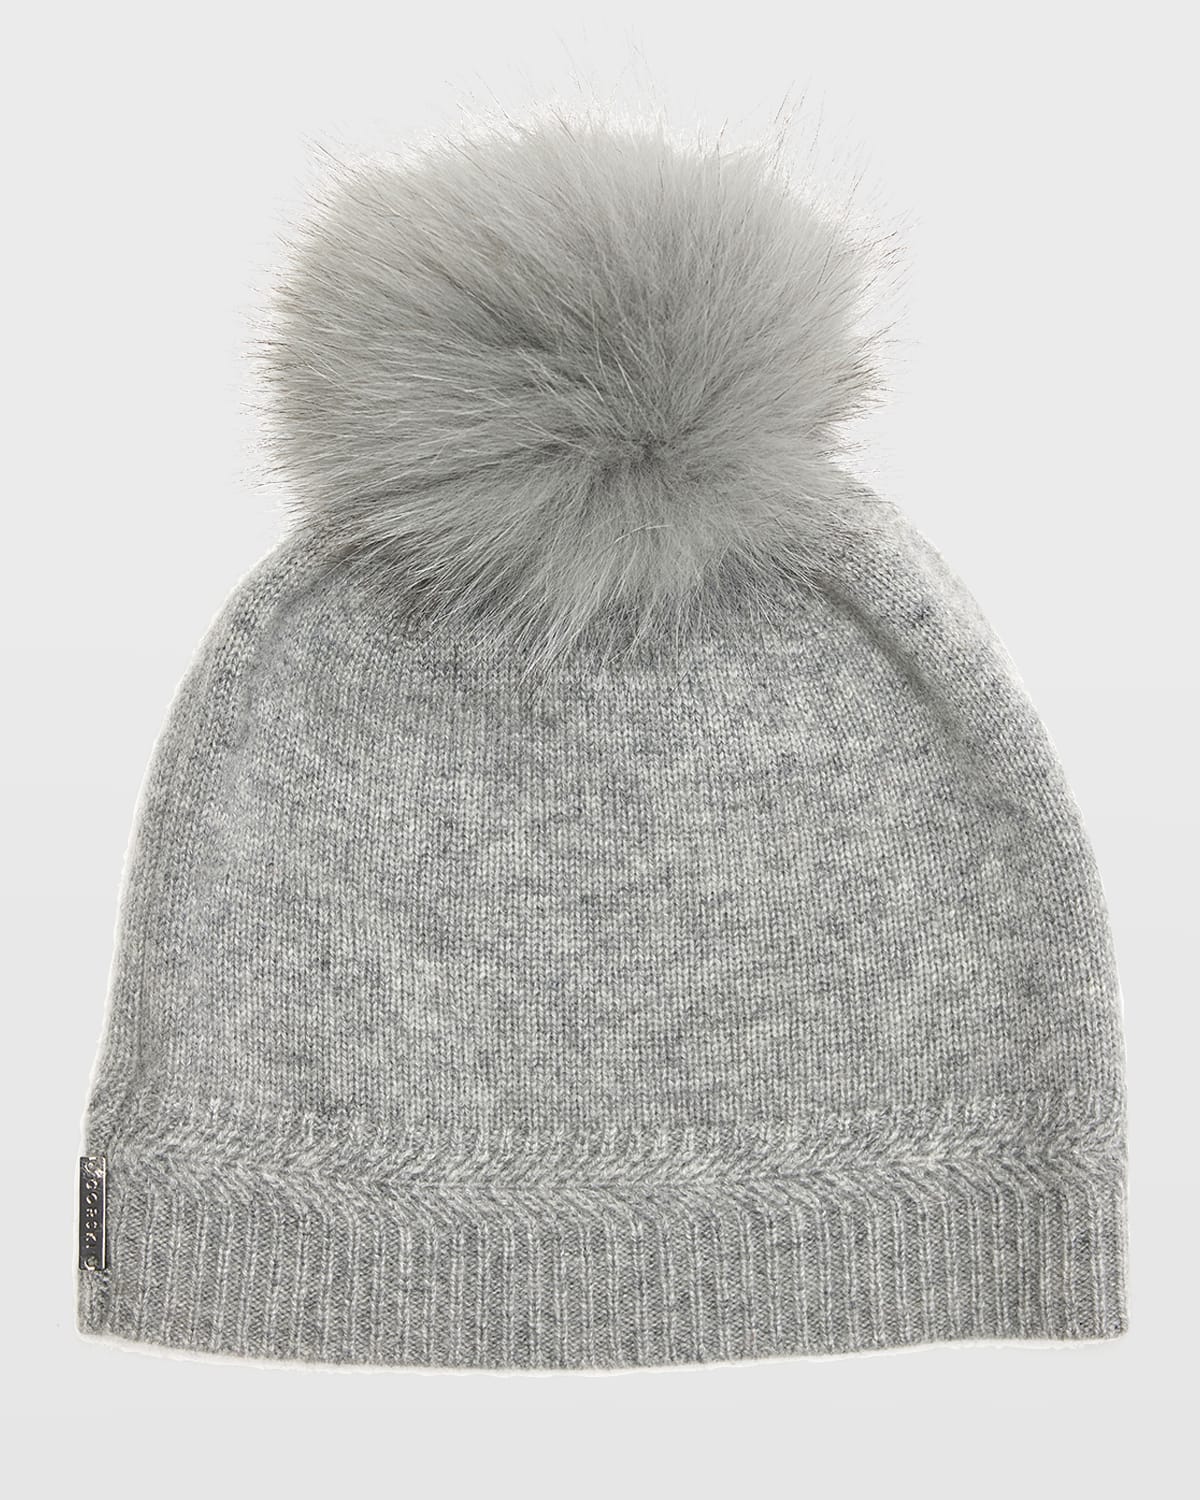 Gorski Knit Cashmere Beanie Hat W/ Fur Pompom In Light Grey